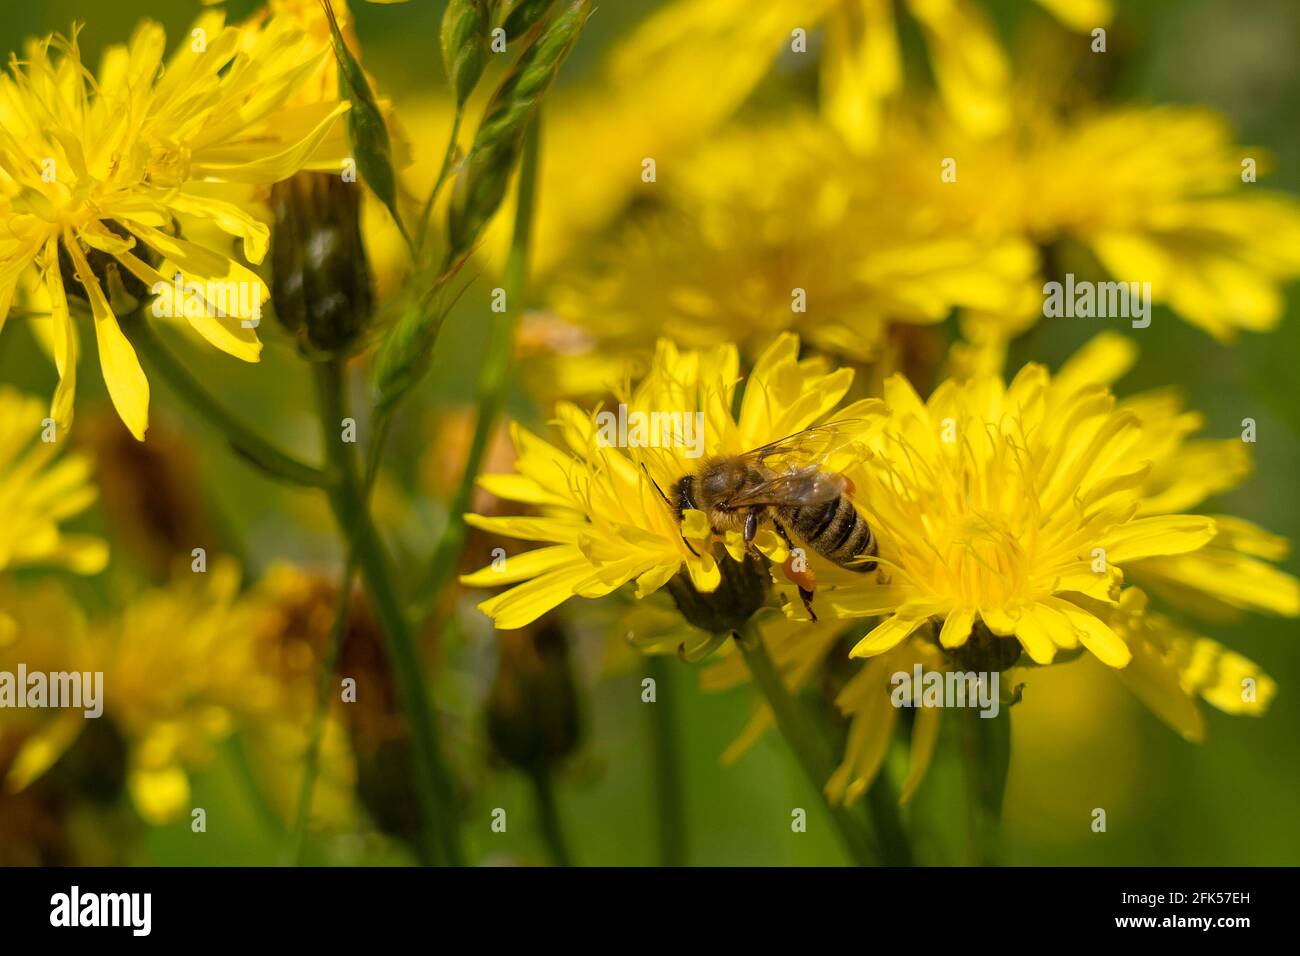 Bienen mit Pollensack auf dem Habichtskraut - gelbe Wildblume - Habichtskraut Stock Photo